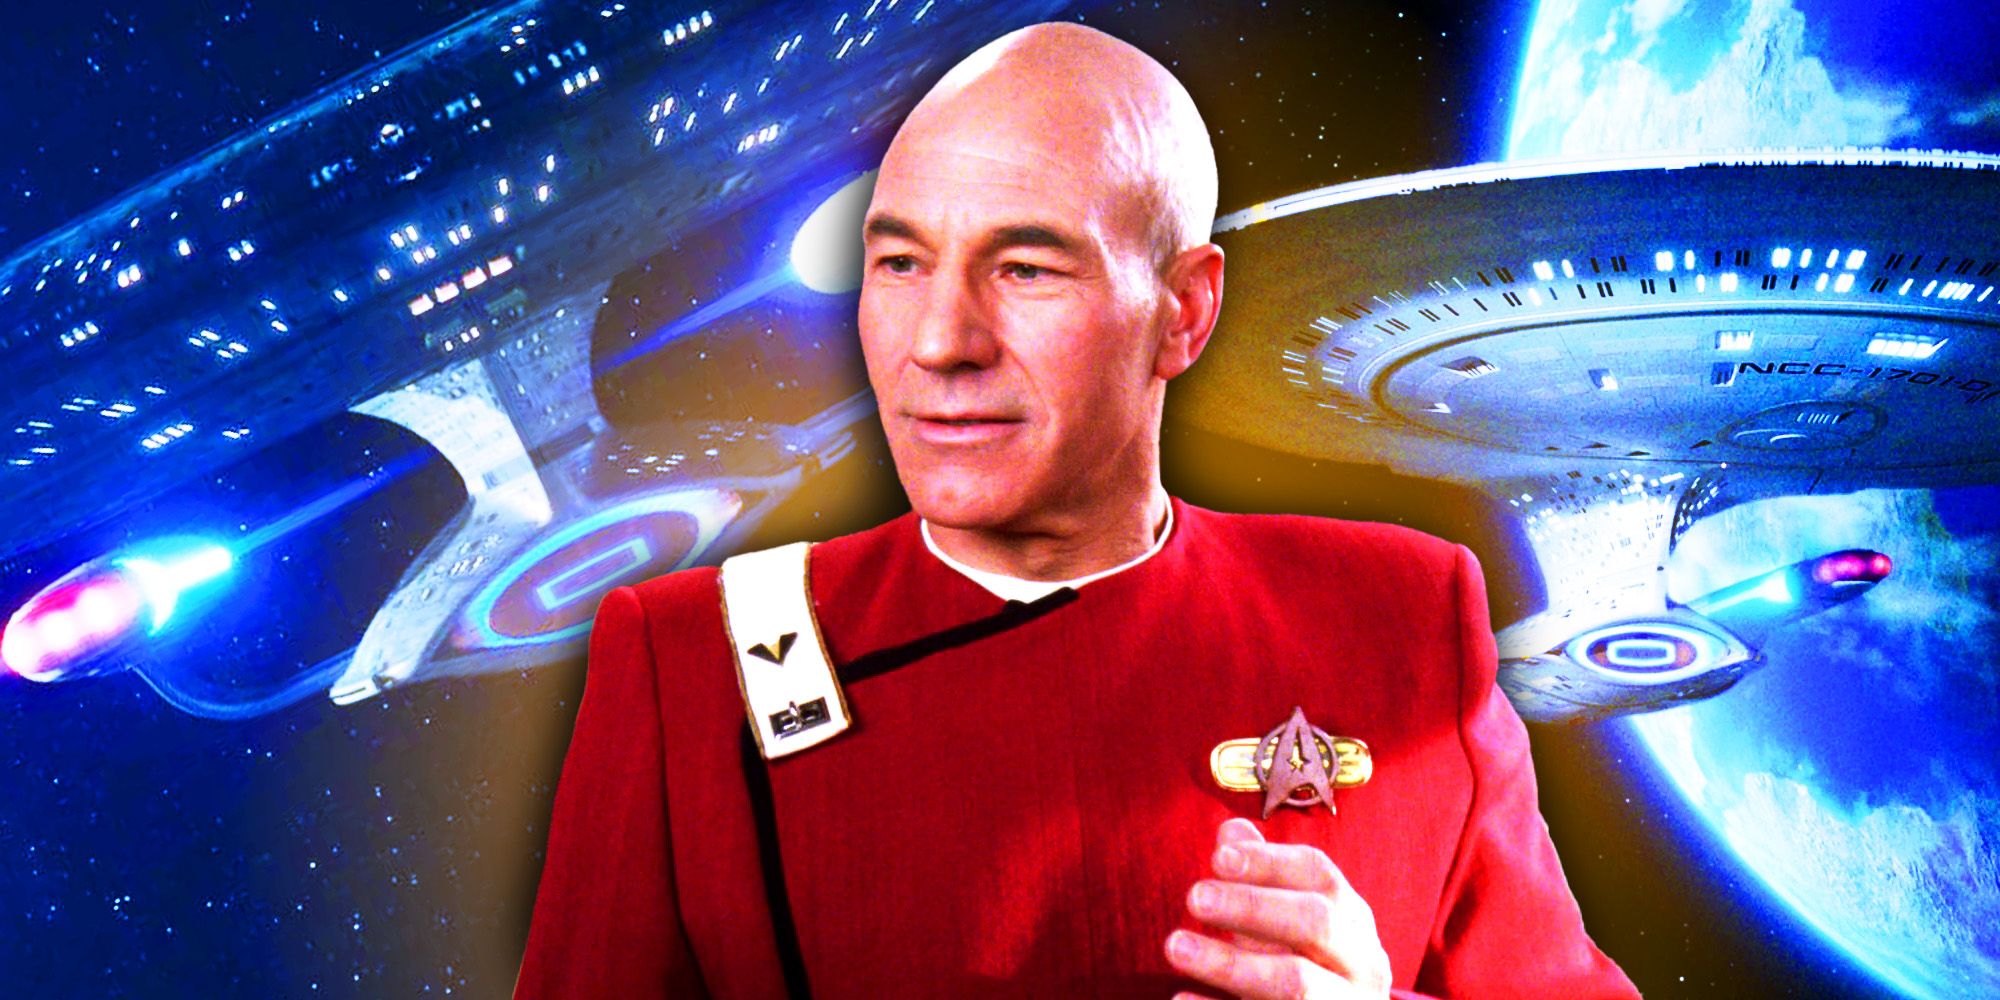 Star Trek revela el comando del Capitán Picard entre Stargazer y Enterprise